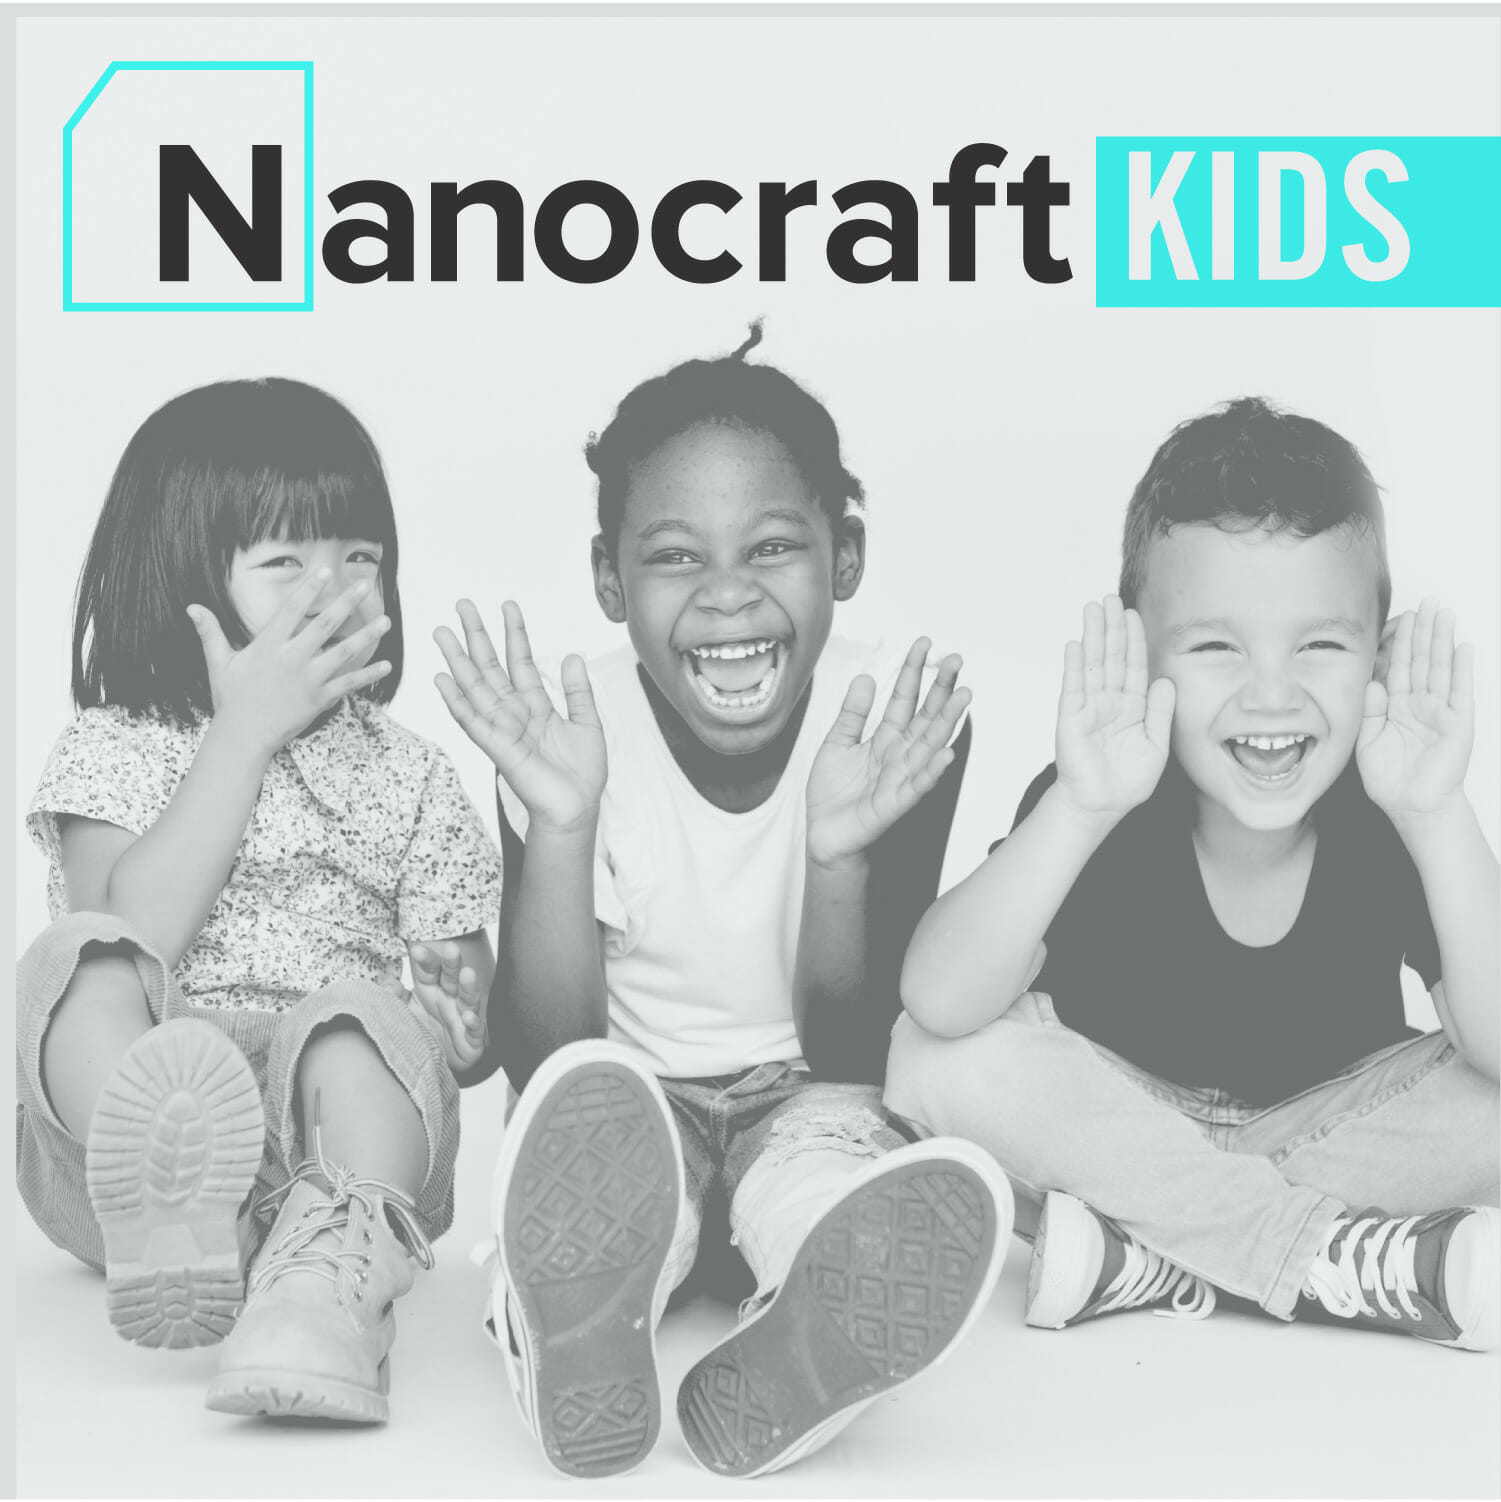 NanoCraft Kids